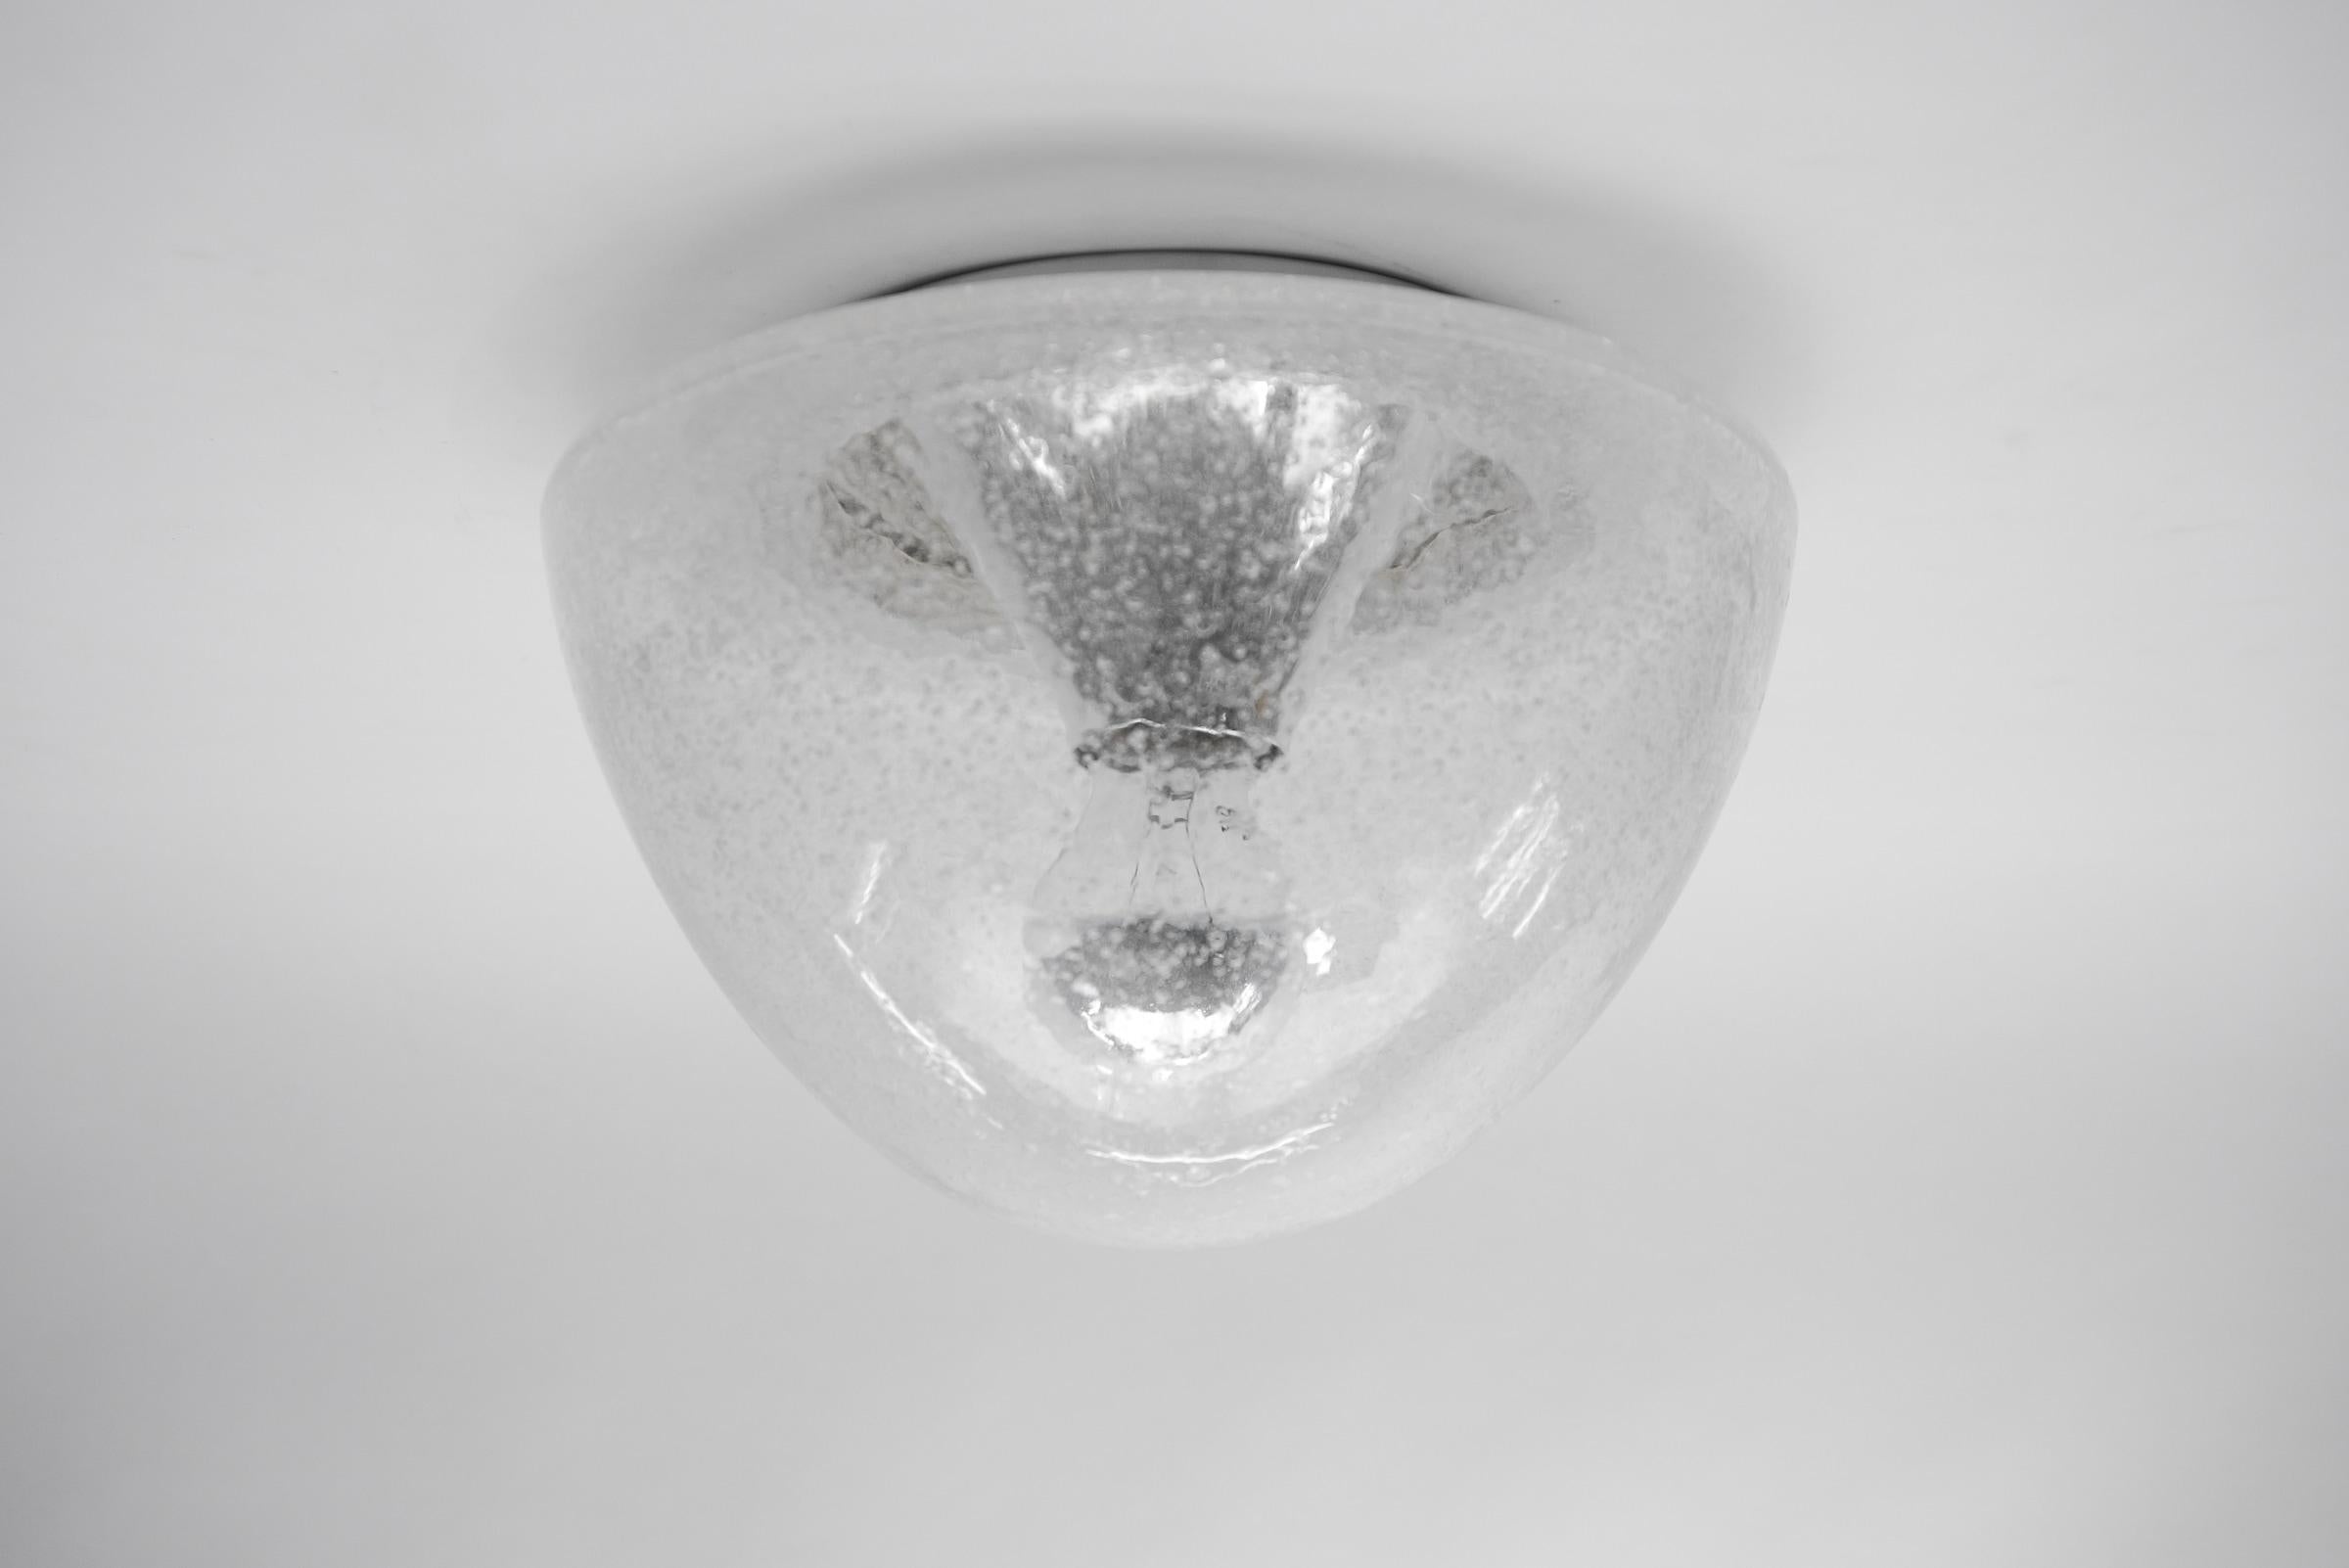 1 von 3 Pilzförmigen Glaslampen aus Chrom in Chrom, Deutschland 1960er Jahre

Abmessungen
Höhe: 18 cm (7.08 in.)
Durchmesser: 26 cm (10,23 Zoll)

Die Leuchte benötigt 1 x E27 Standard Glühbirne mit max. 60W.

Glühbirnen sind nicht enthalten.
Es ist